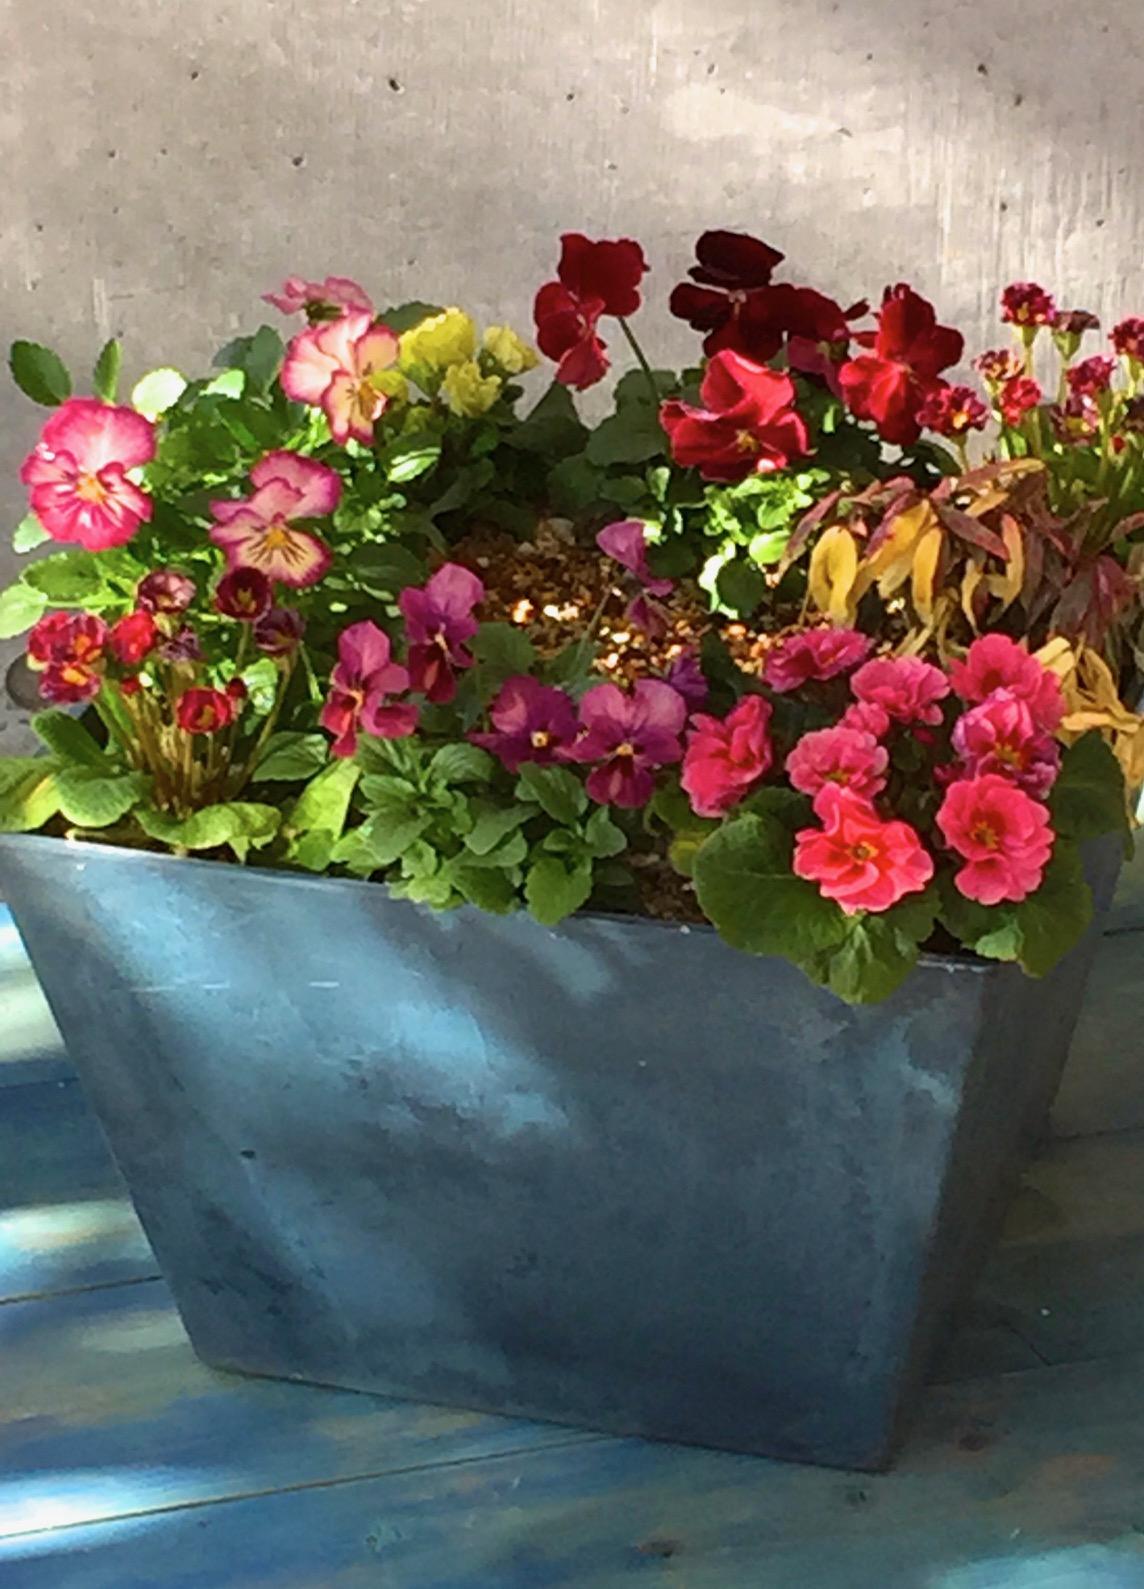 12月までに作る寄せ植え 吉谷桂子のガーデンダイアリー 花と緑と豊かに暮らすガーデニング手帖